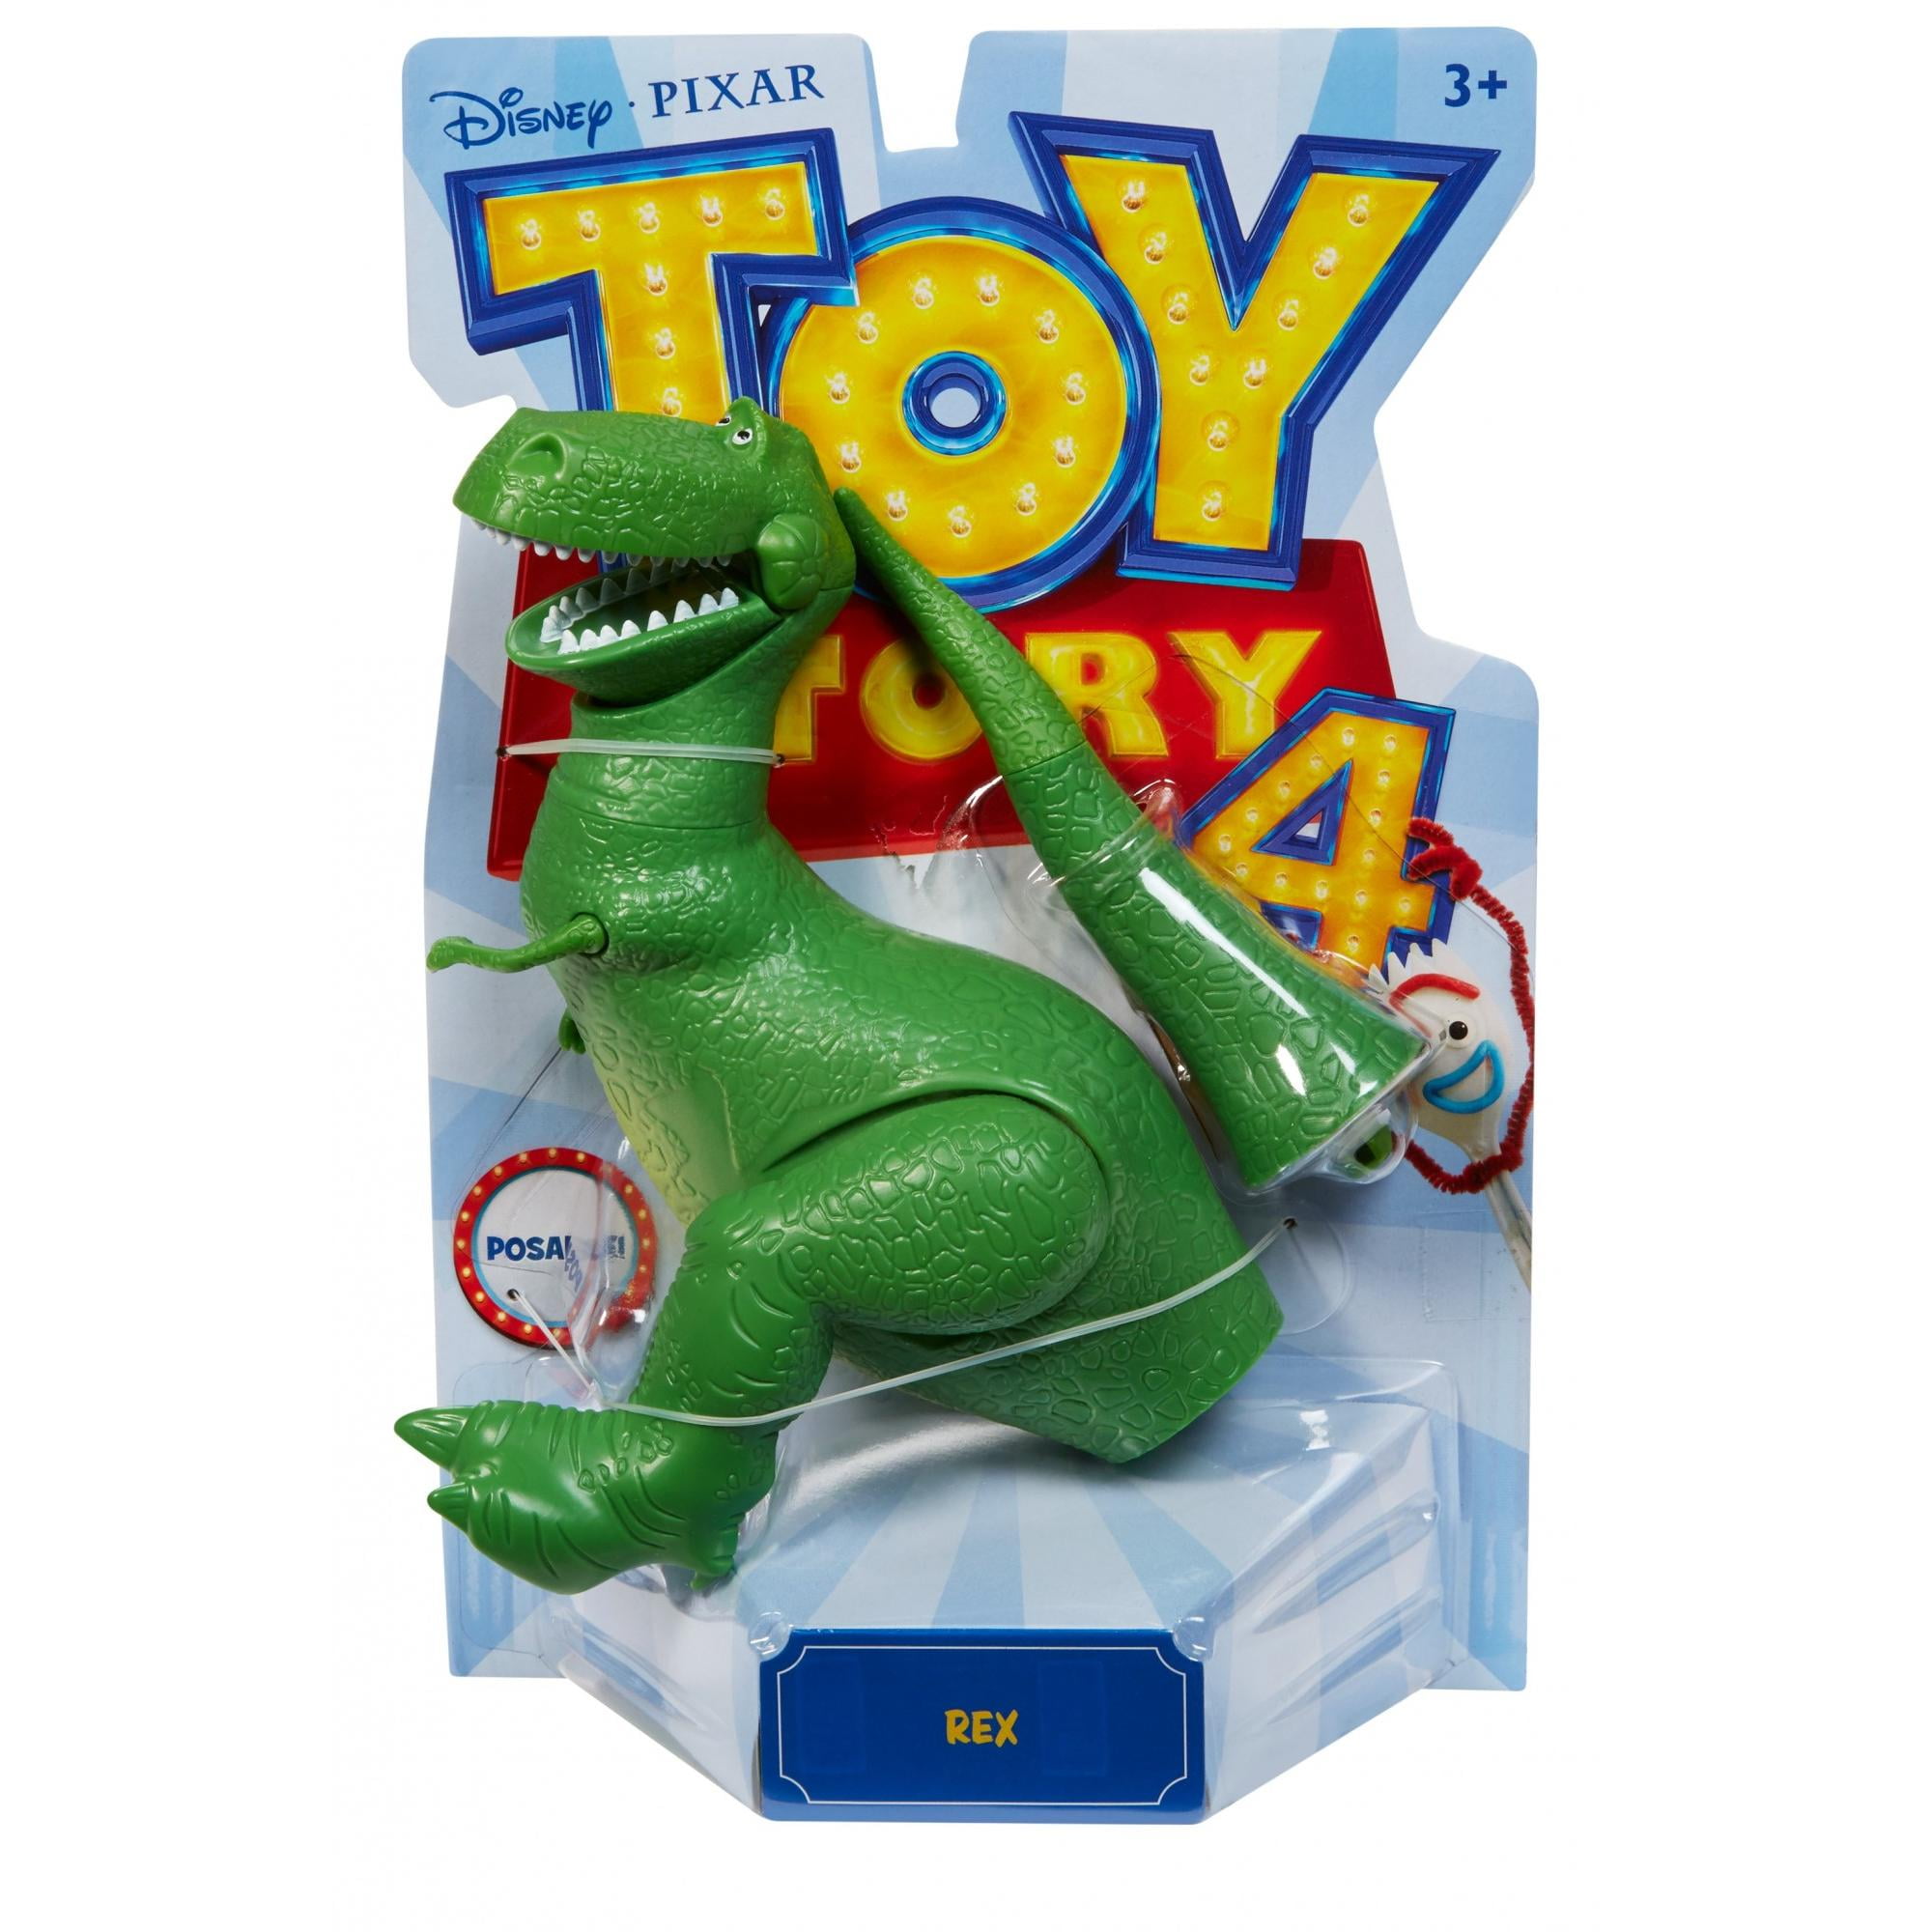 Neu ca 3D Magnet 5 Disney 8 x 8,5 cm Rex Toy Story 